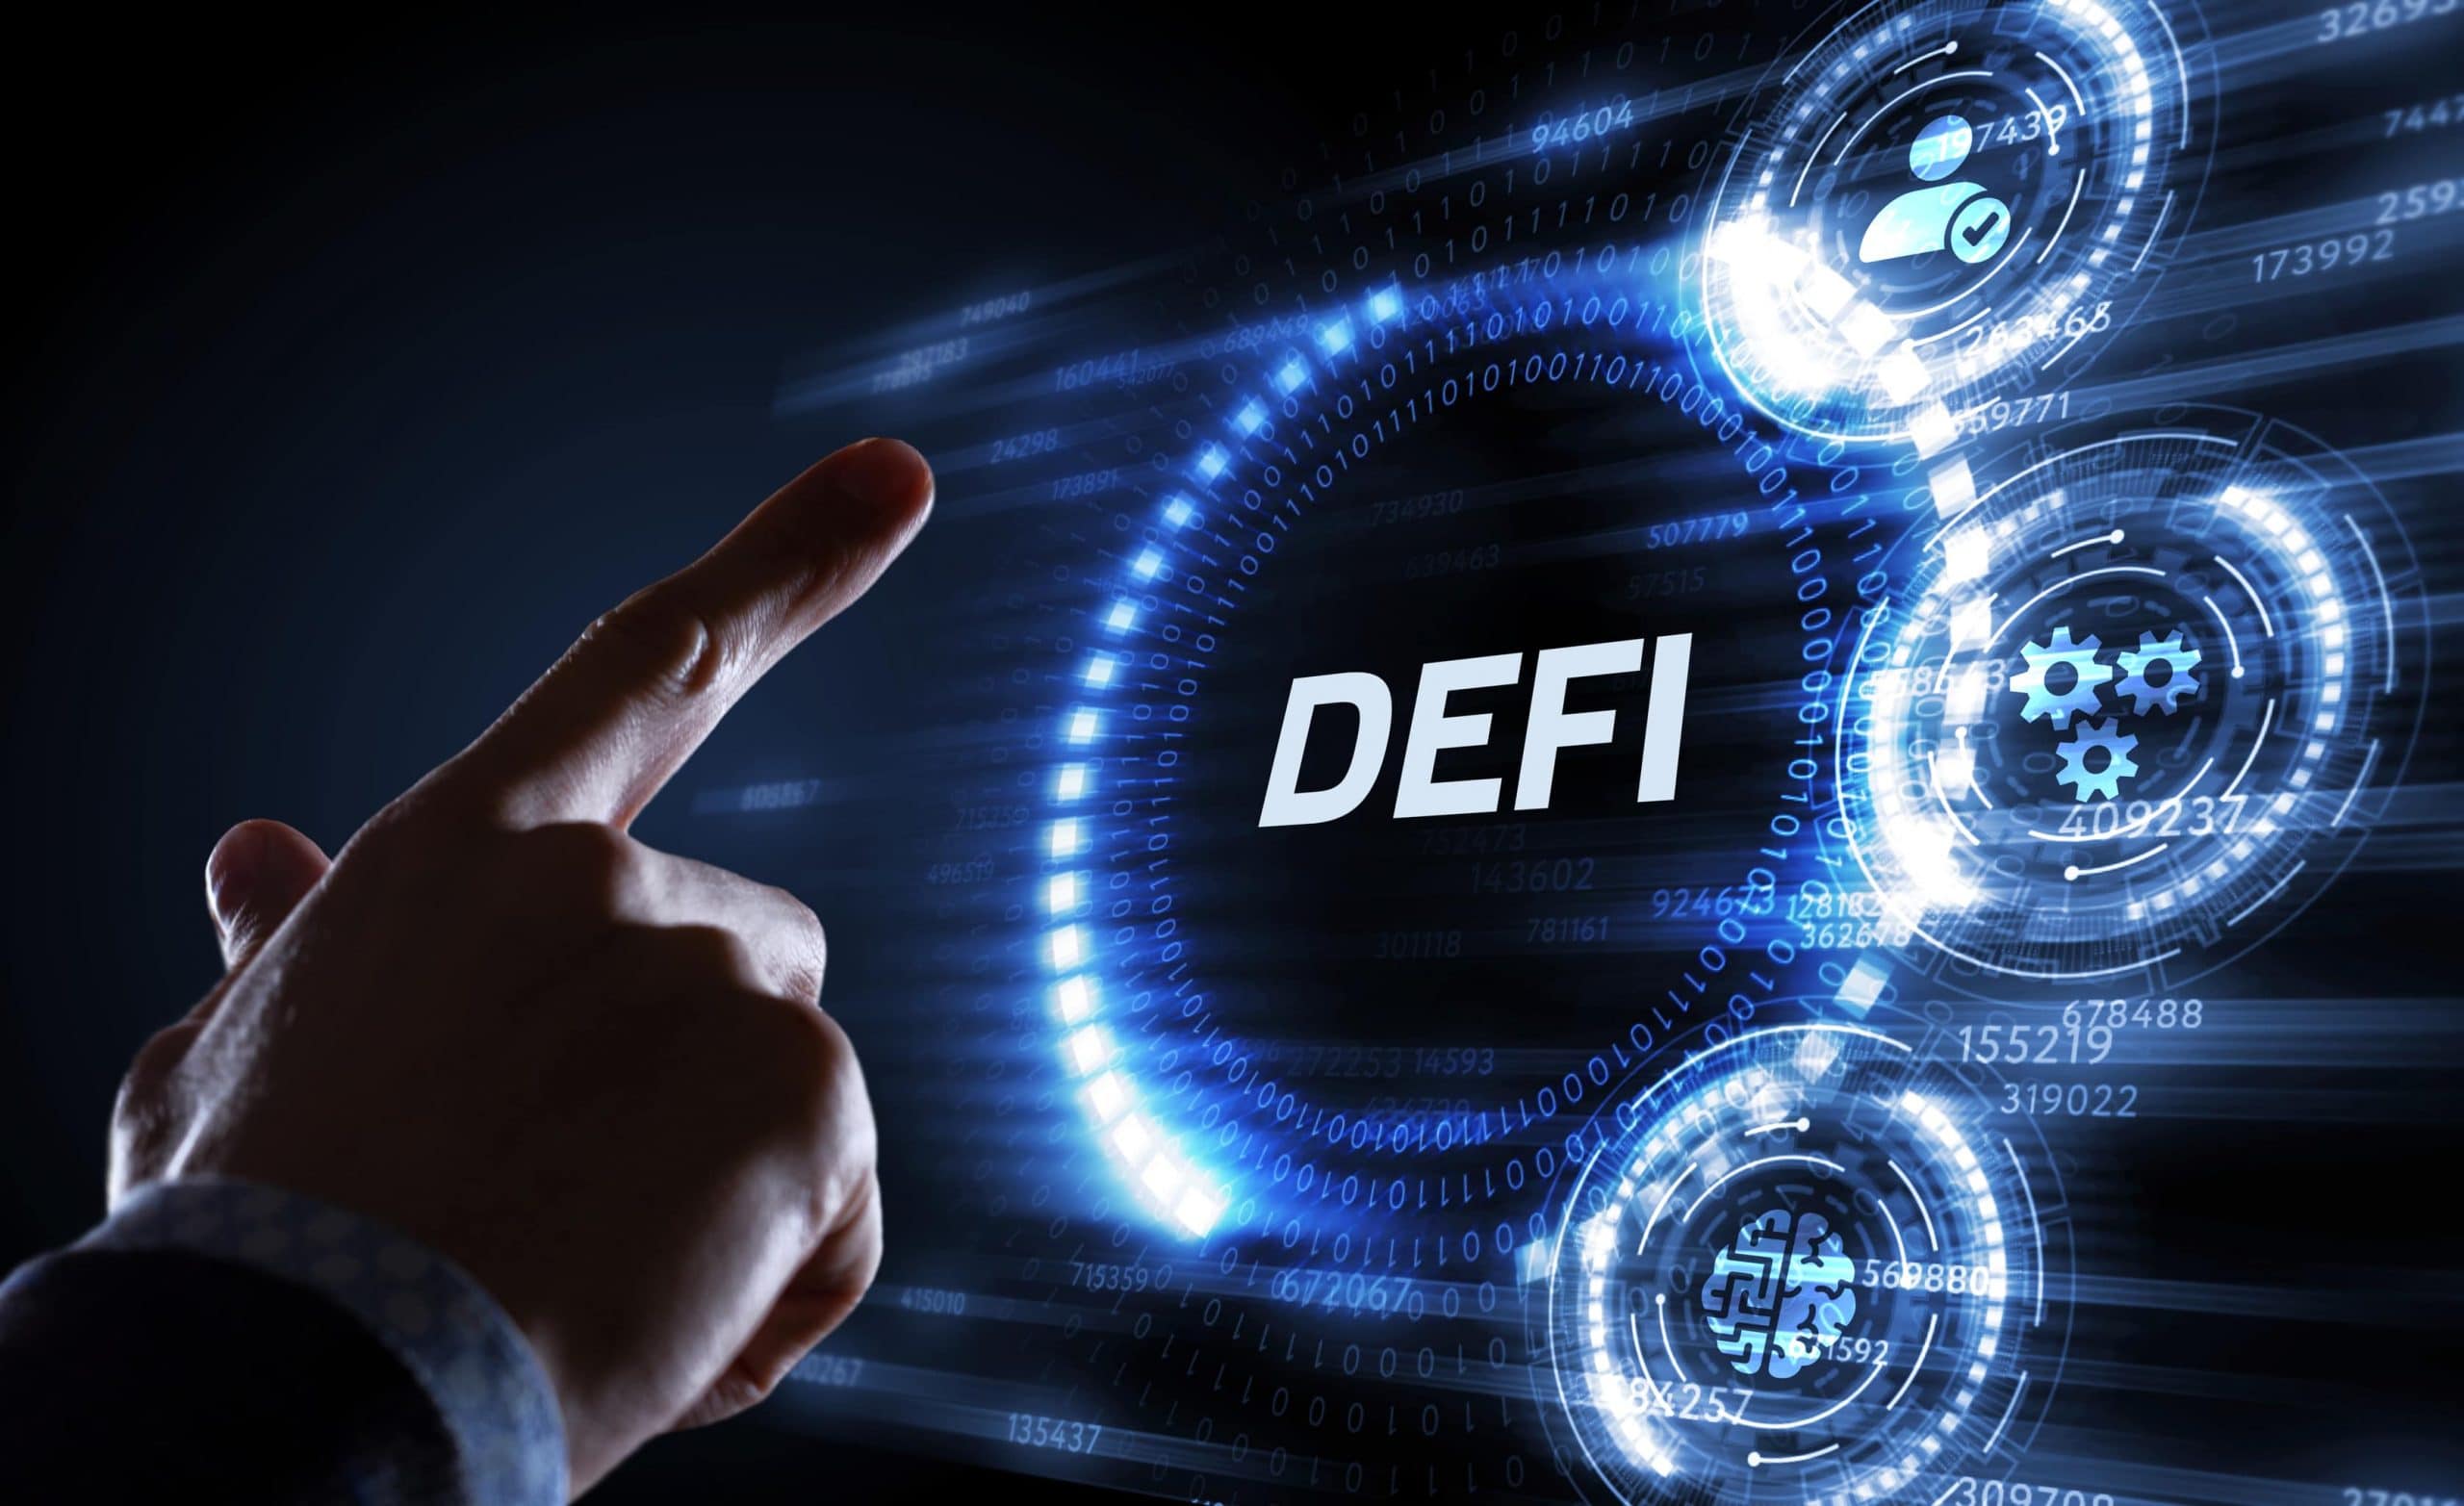 Nhân tố nào tác động đến triển vọng dài hạn và ngắn hạn của DeFi? | FeedIn